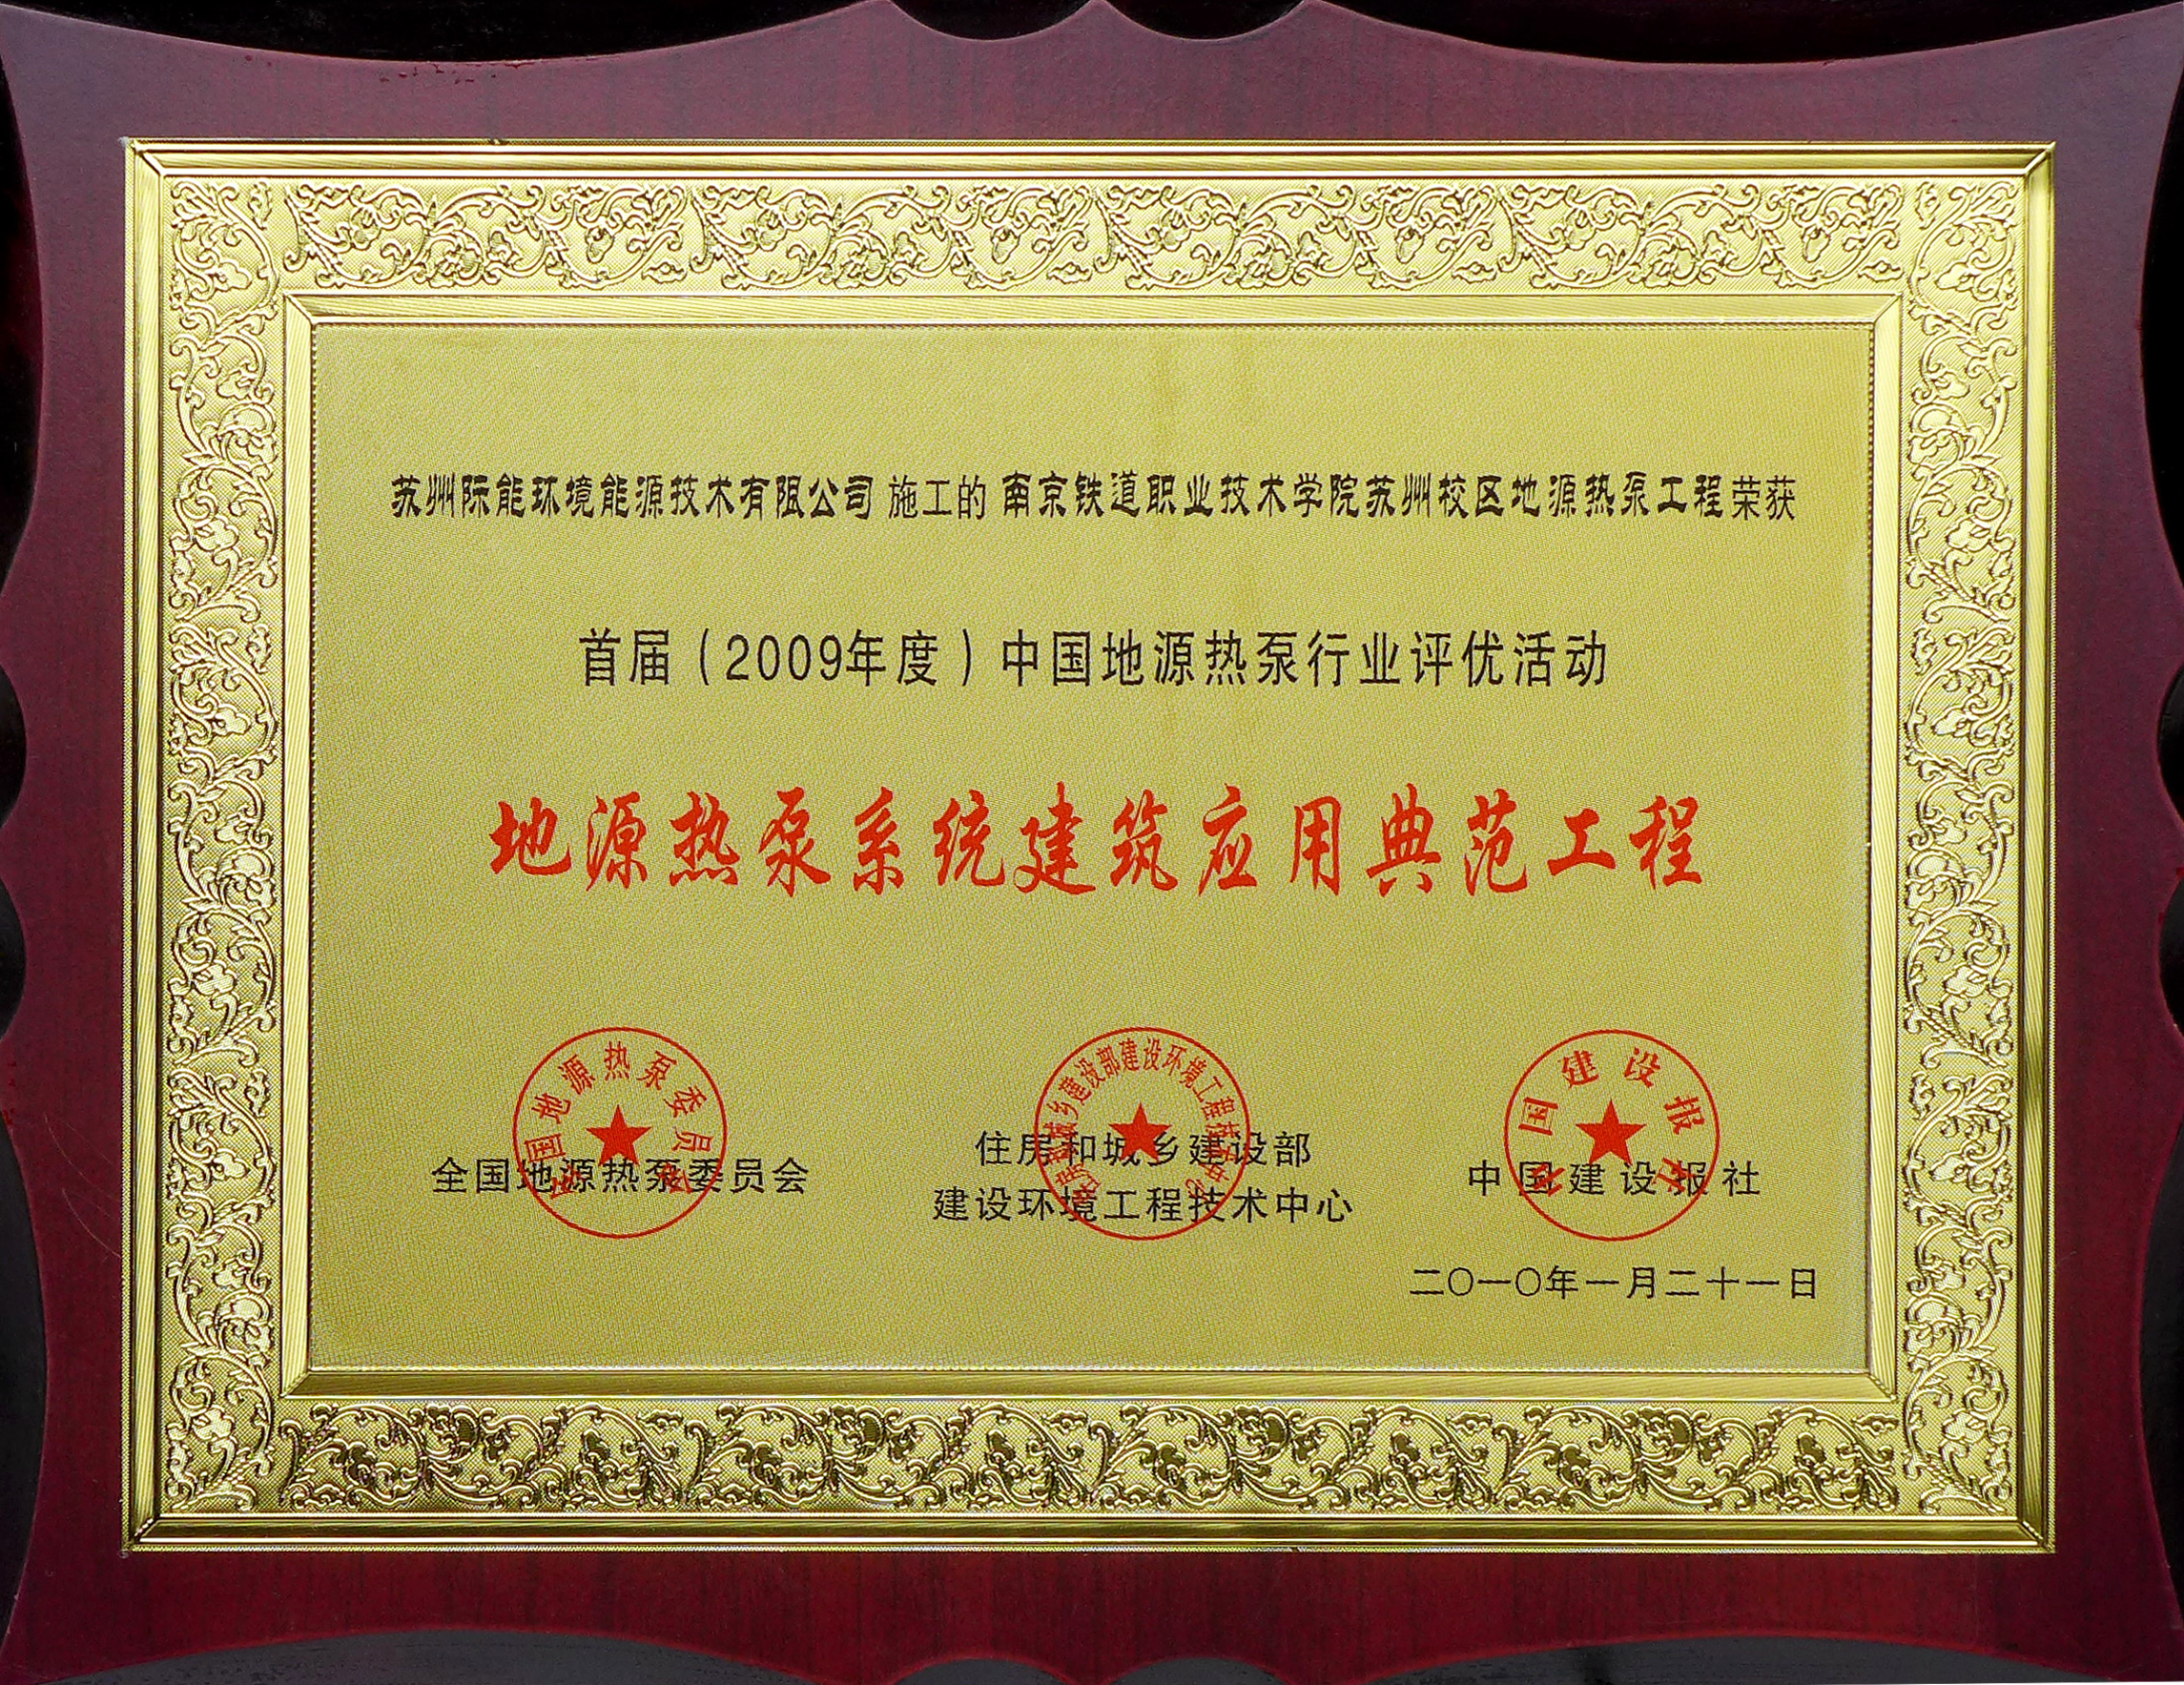 2009年度 铁道学院系统建筑应用典范工程-奖牌